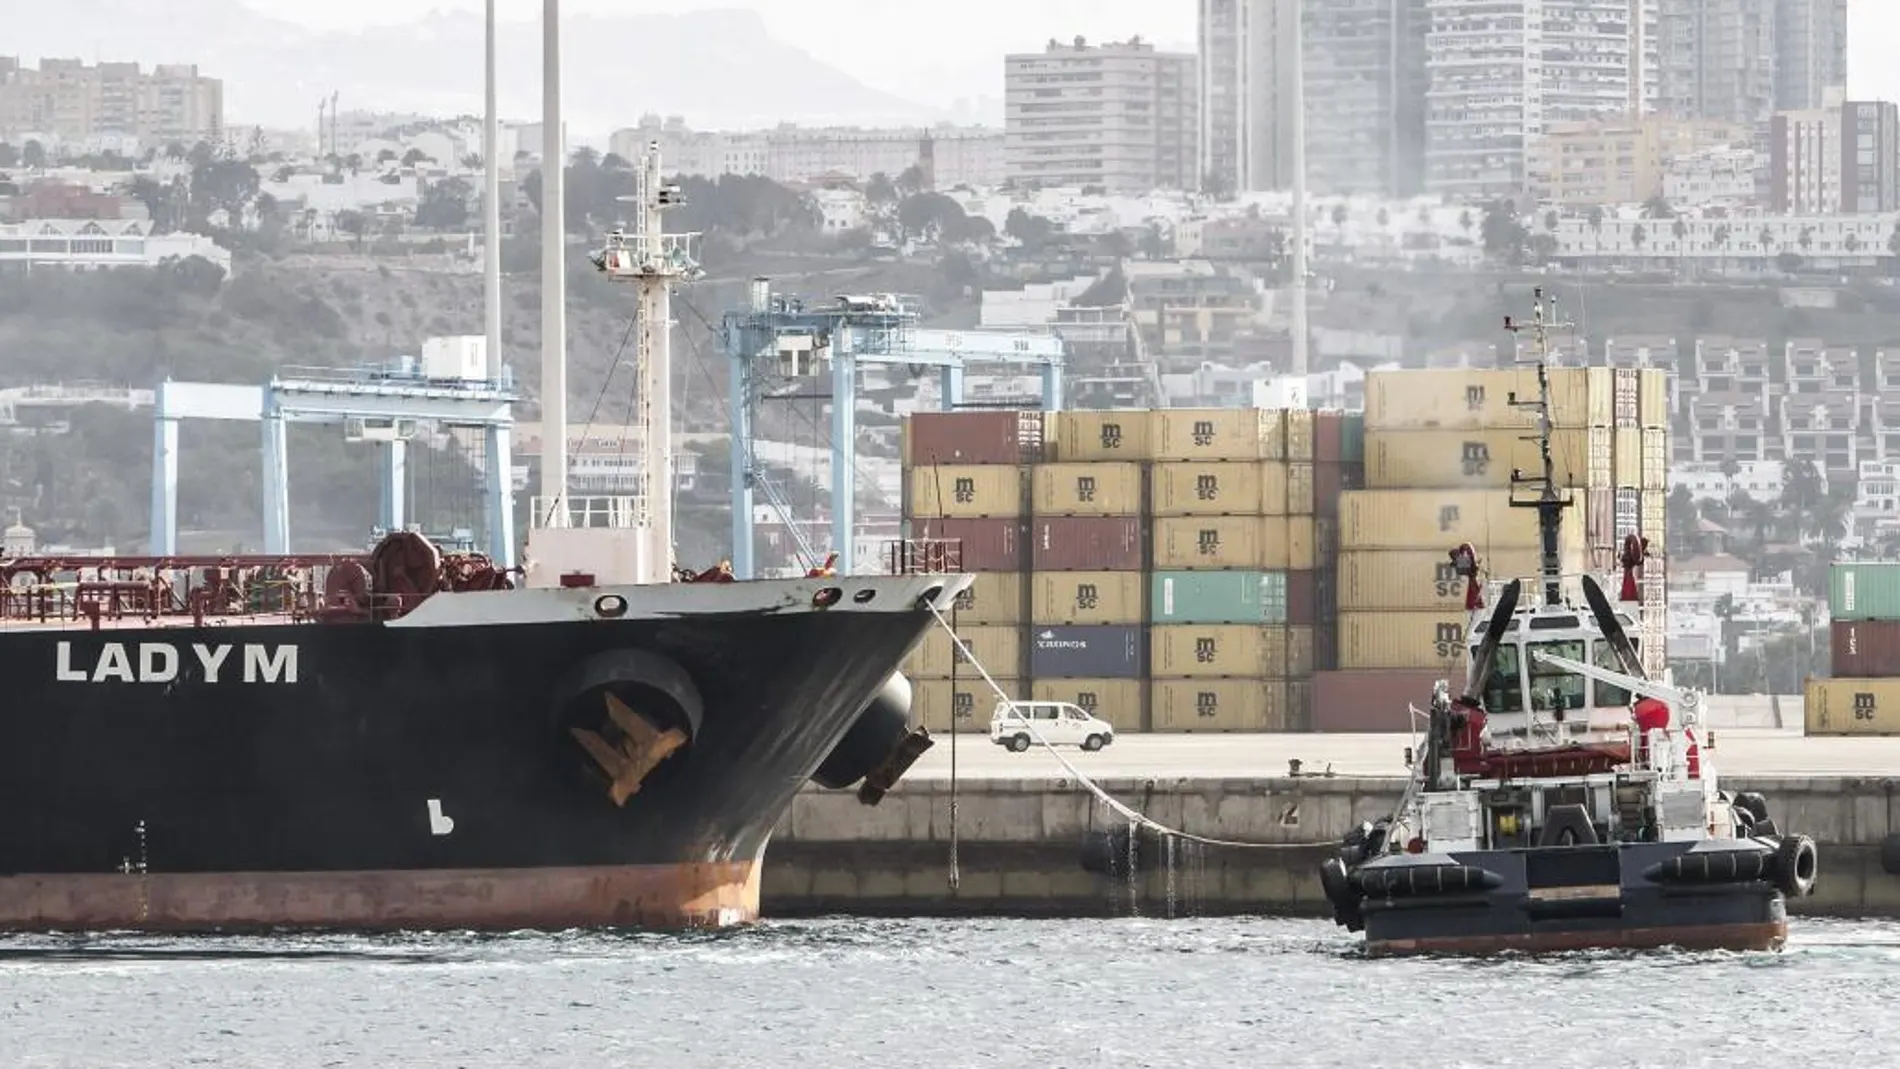 El petrolero liberiano Lady M, cargado con 94.000 toneladas de fuel, ha entrado esta tarde en el puerto de Las Palmas de Gran Canaria.